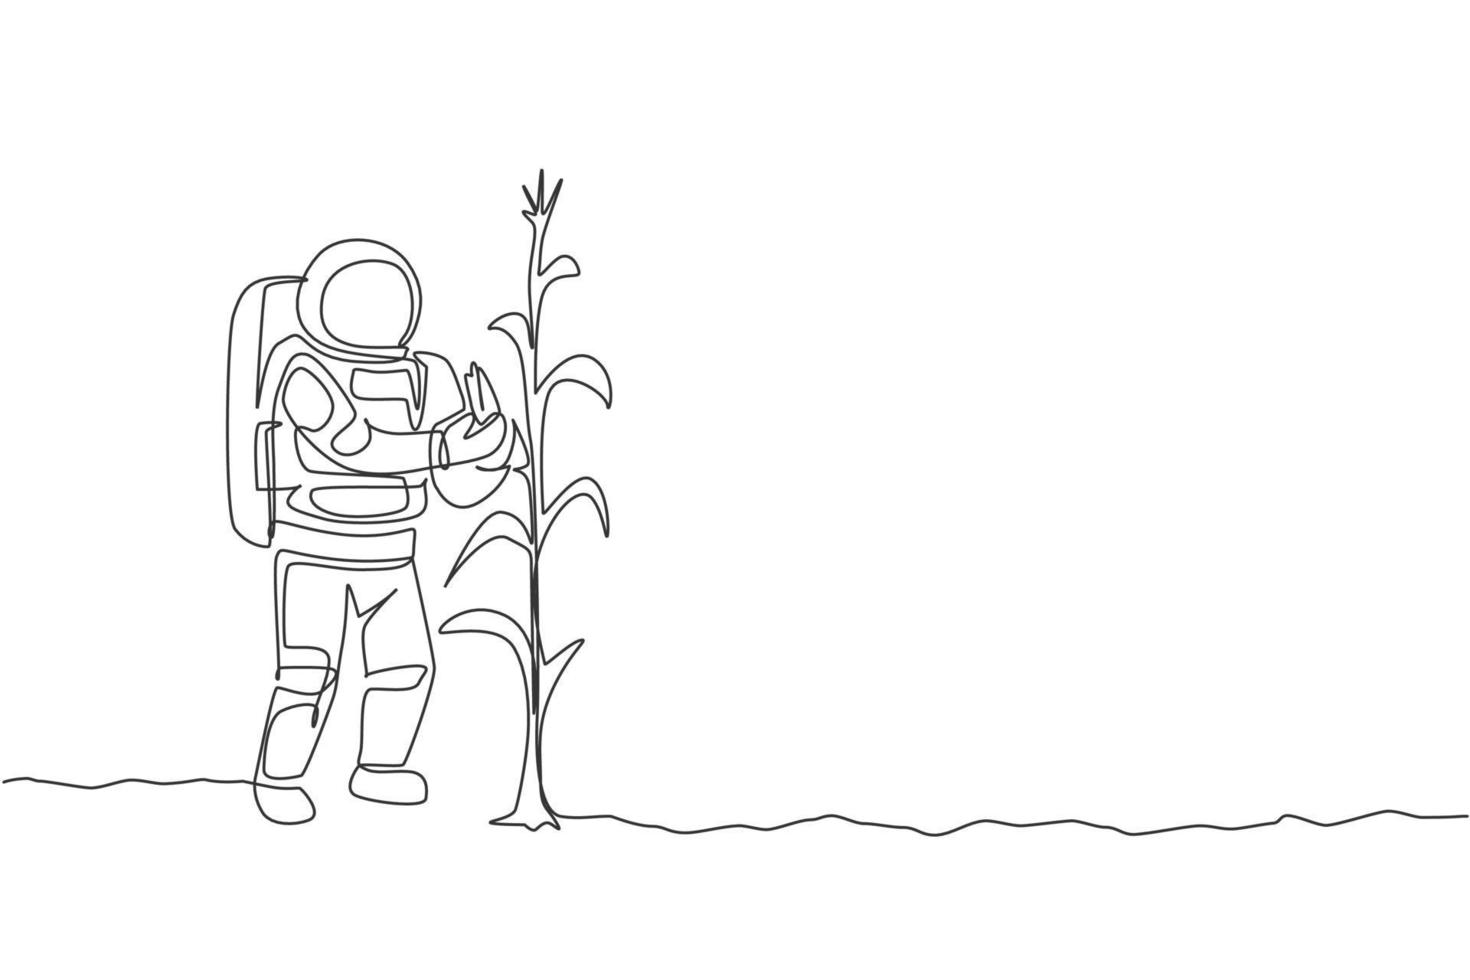 un disegno a tratteggio continuo dell'astronauta che raccoglie mais dolce dalla pianta sulla superficie lunare. concetto di astronauta agricoltura nello spazio profondo. illustrazione vettoriale di disegno grafico di disegno grafico a linea singola dinamica